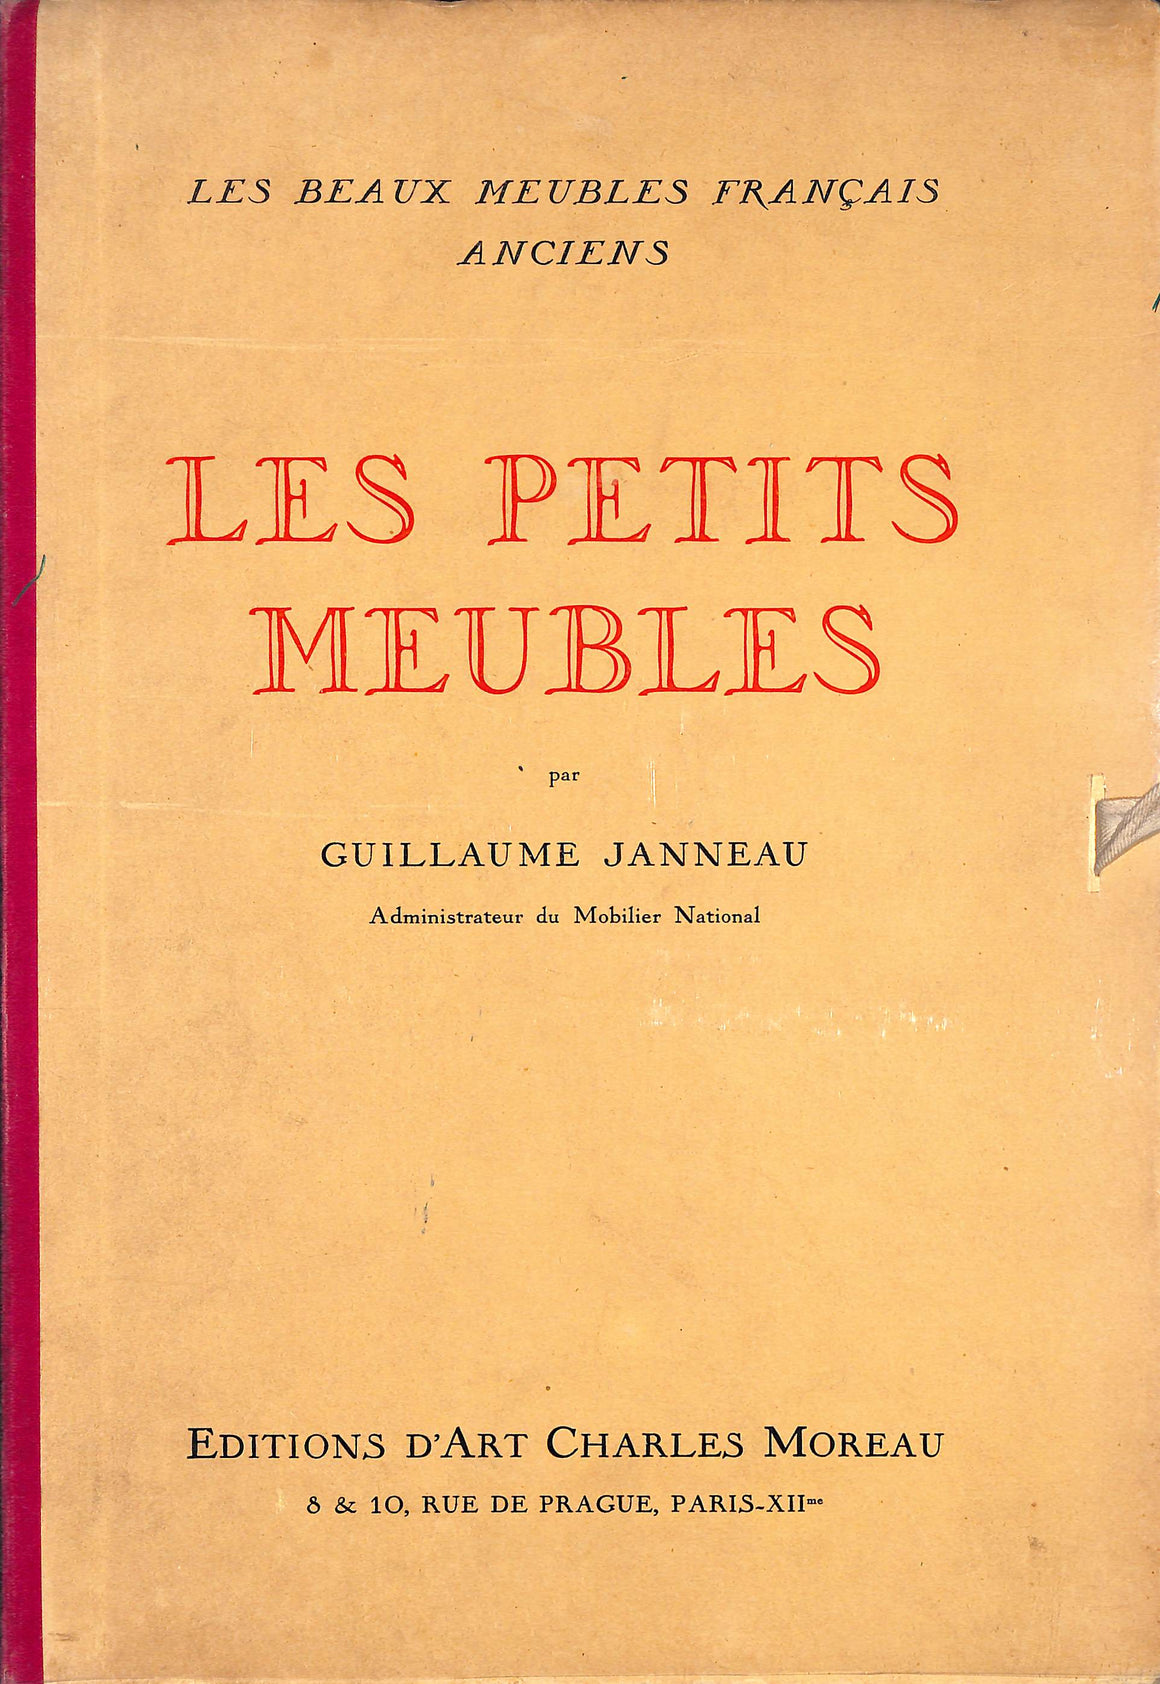 "Les Beaux Meubles Français Anciens - Les Petits Meubles" 1930 JANNEAU, Guillaume